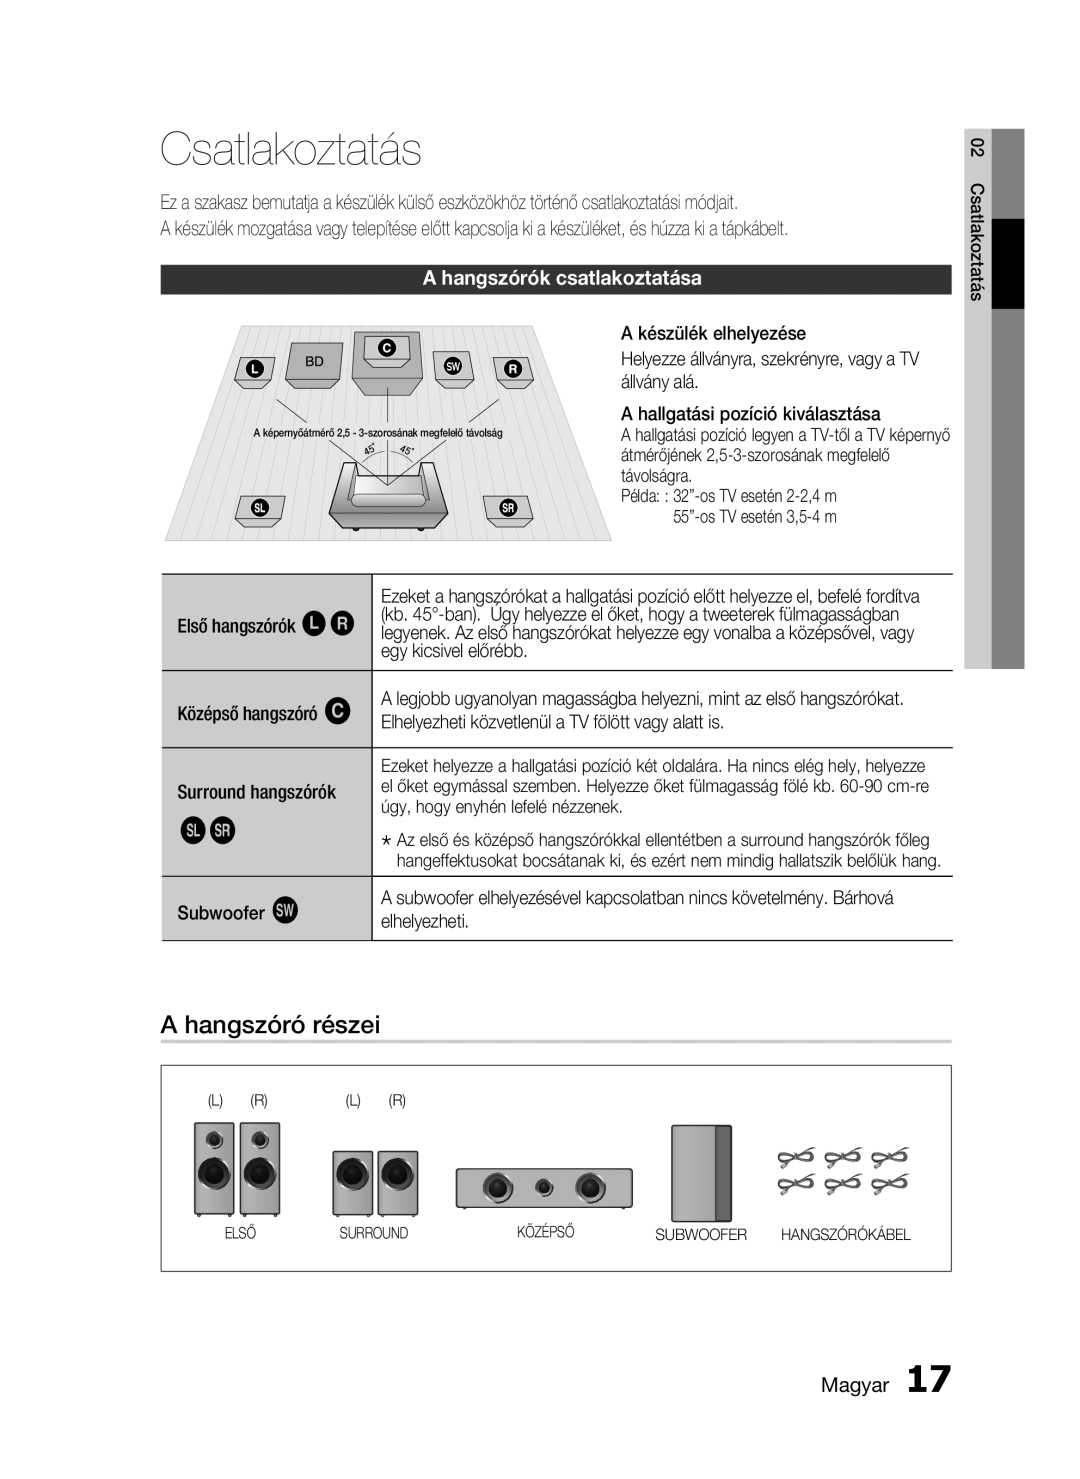 Samsung HT-C5900/XEE, HT-C5900/XEF manual Csatlakoztatás, A hangszóró részei, A hangszórók csatlakoztatása, Magyar 